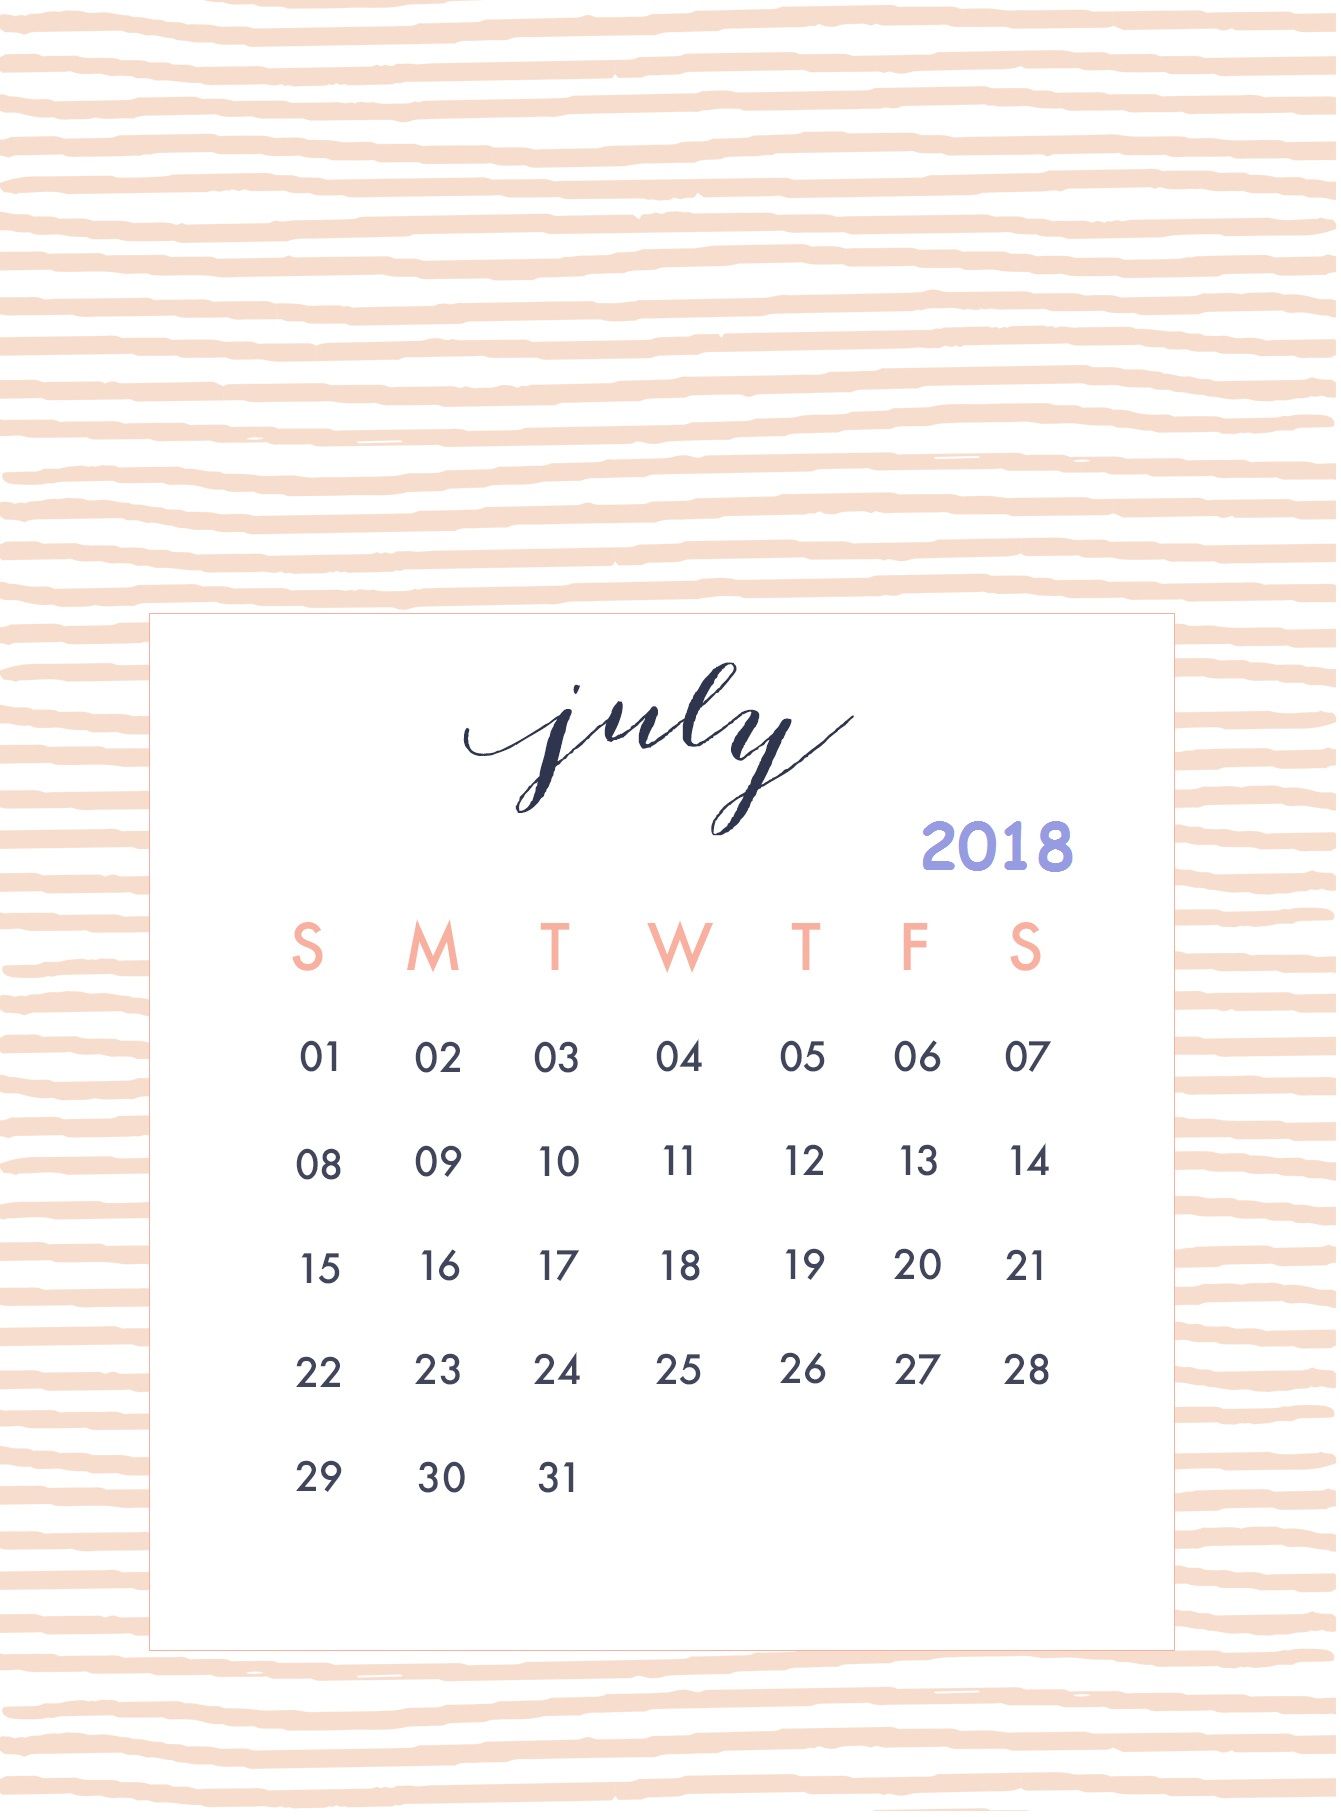 July 2018 iPhone Wallpaper Calendar